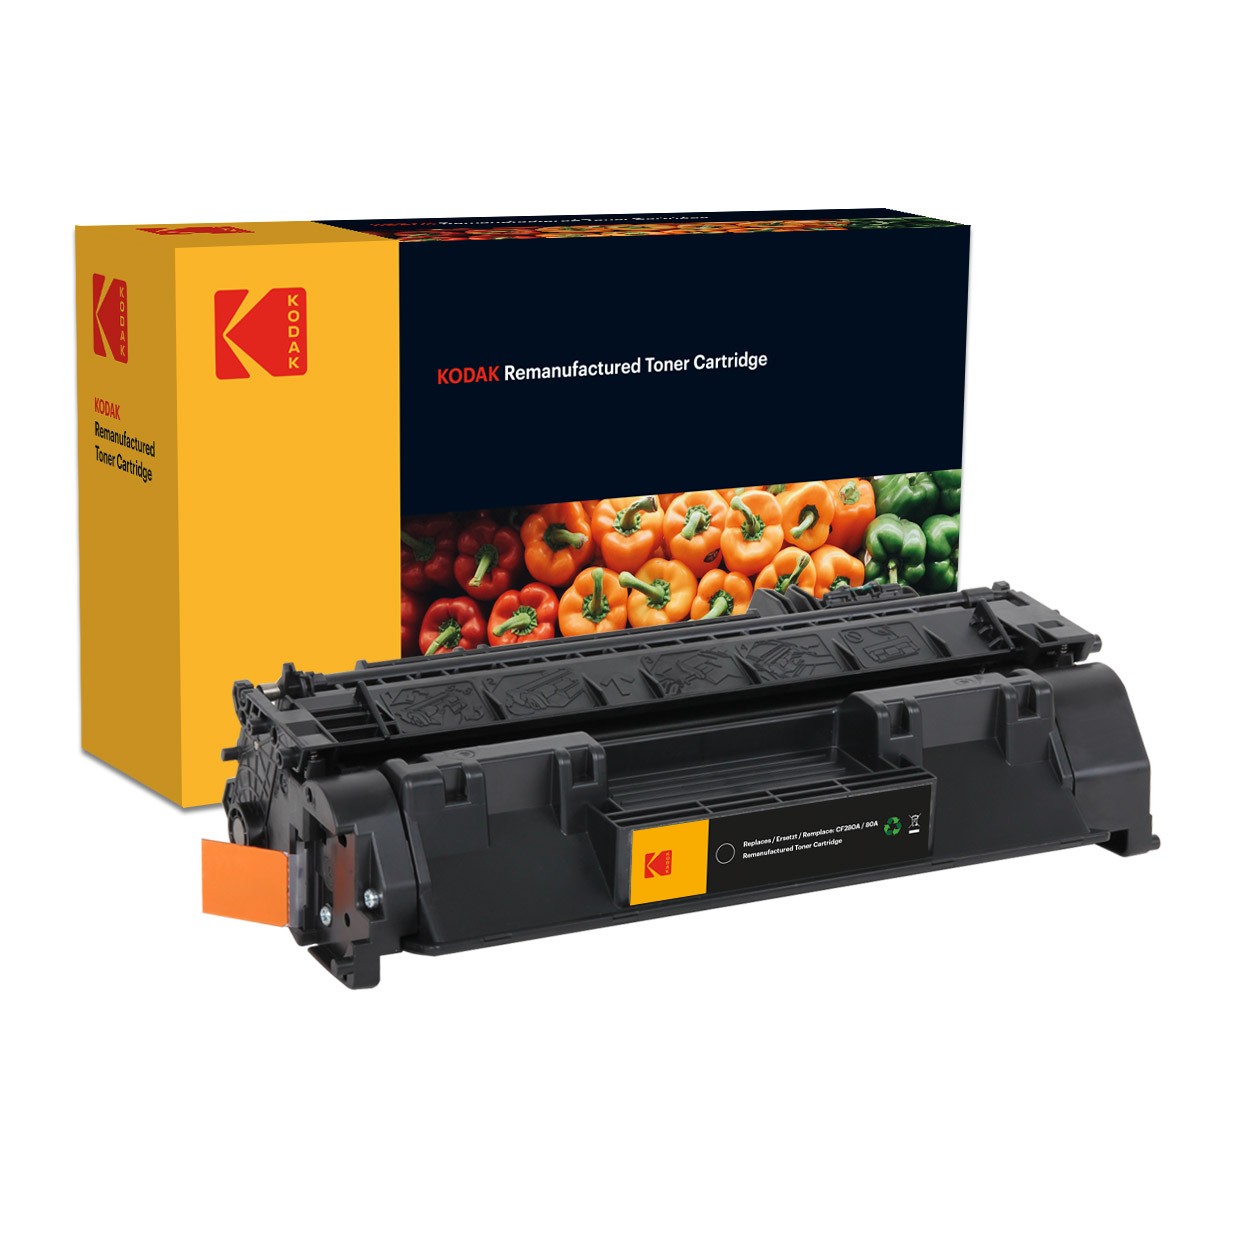 Cartus toner original Kodak compatibil HP CF280A Black Premium Kodak cartuseria.ro imagine 2022 depozituldepapetarie.ro